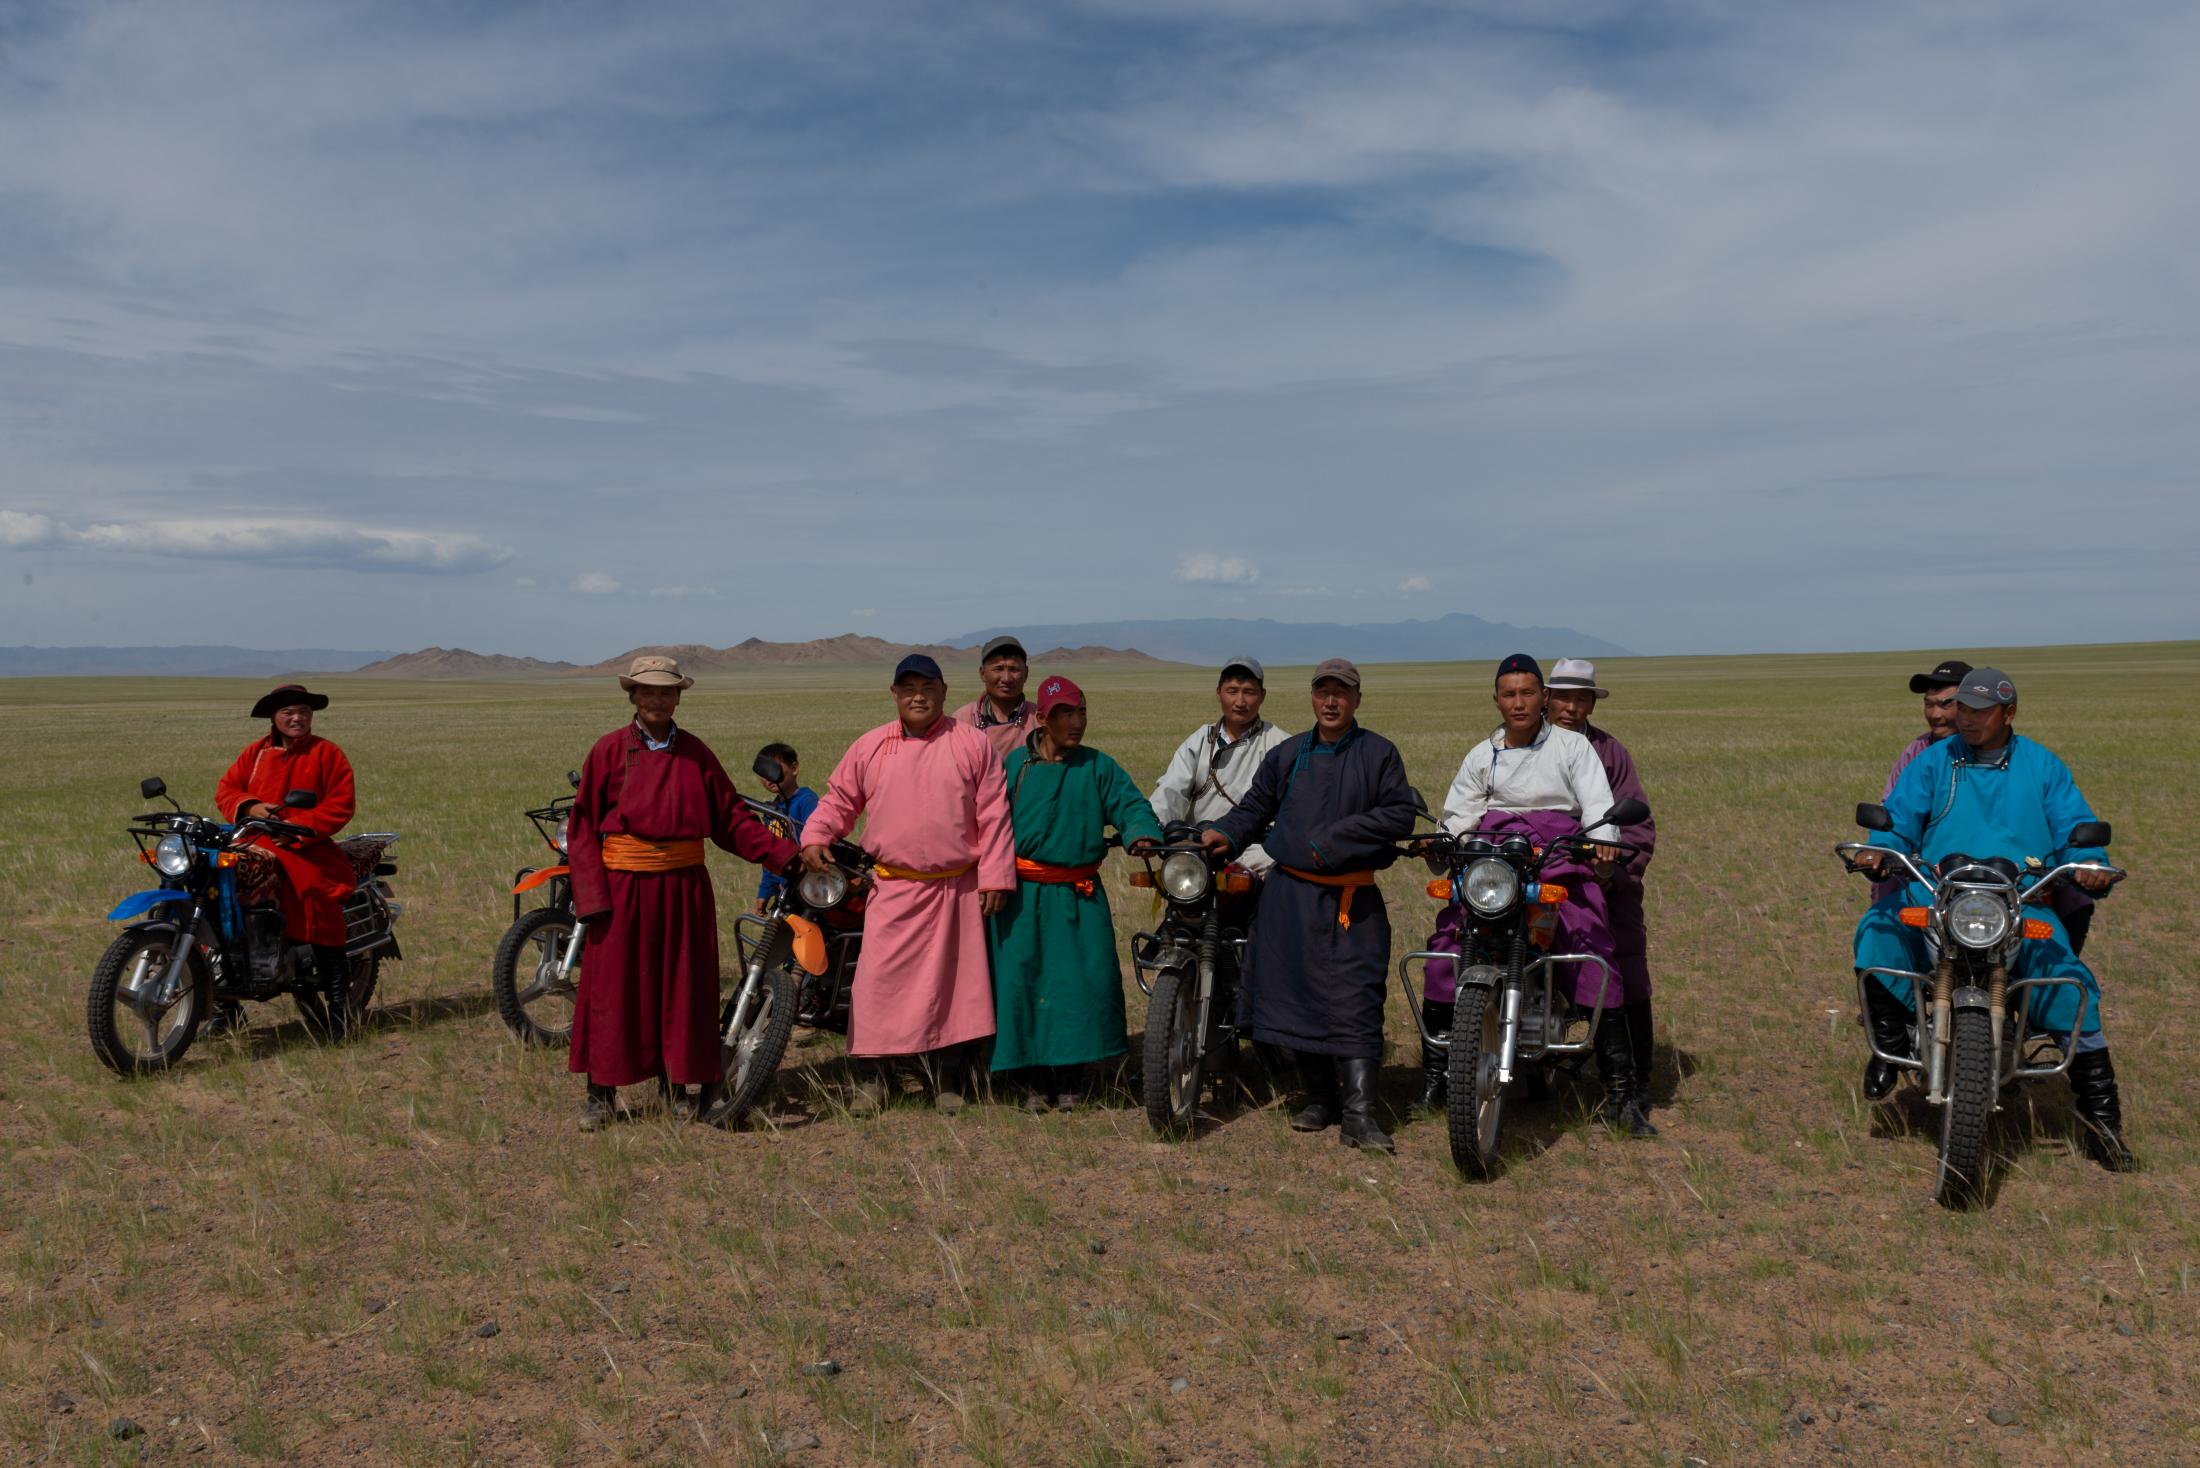 Mongolie / Mongolia 2019